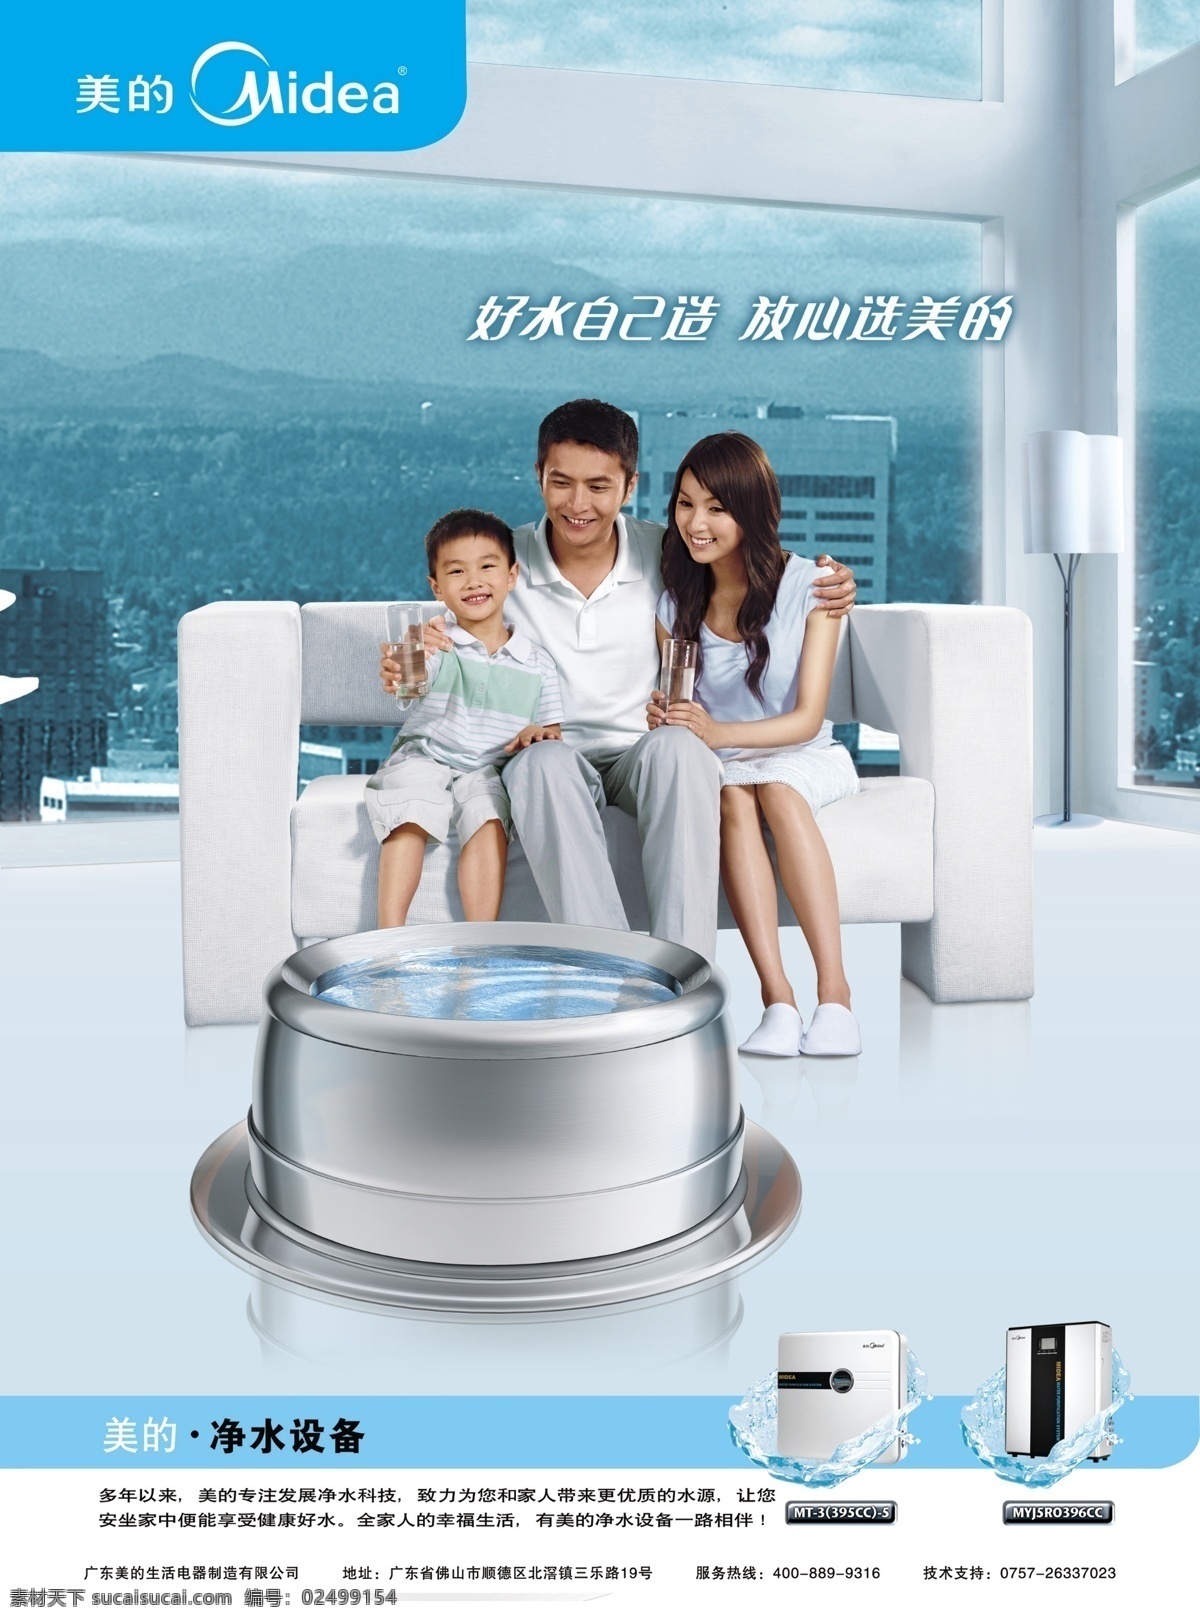 美的 净水器 广告宣传 一家人 广告 沙发 房间